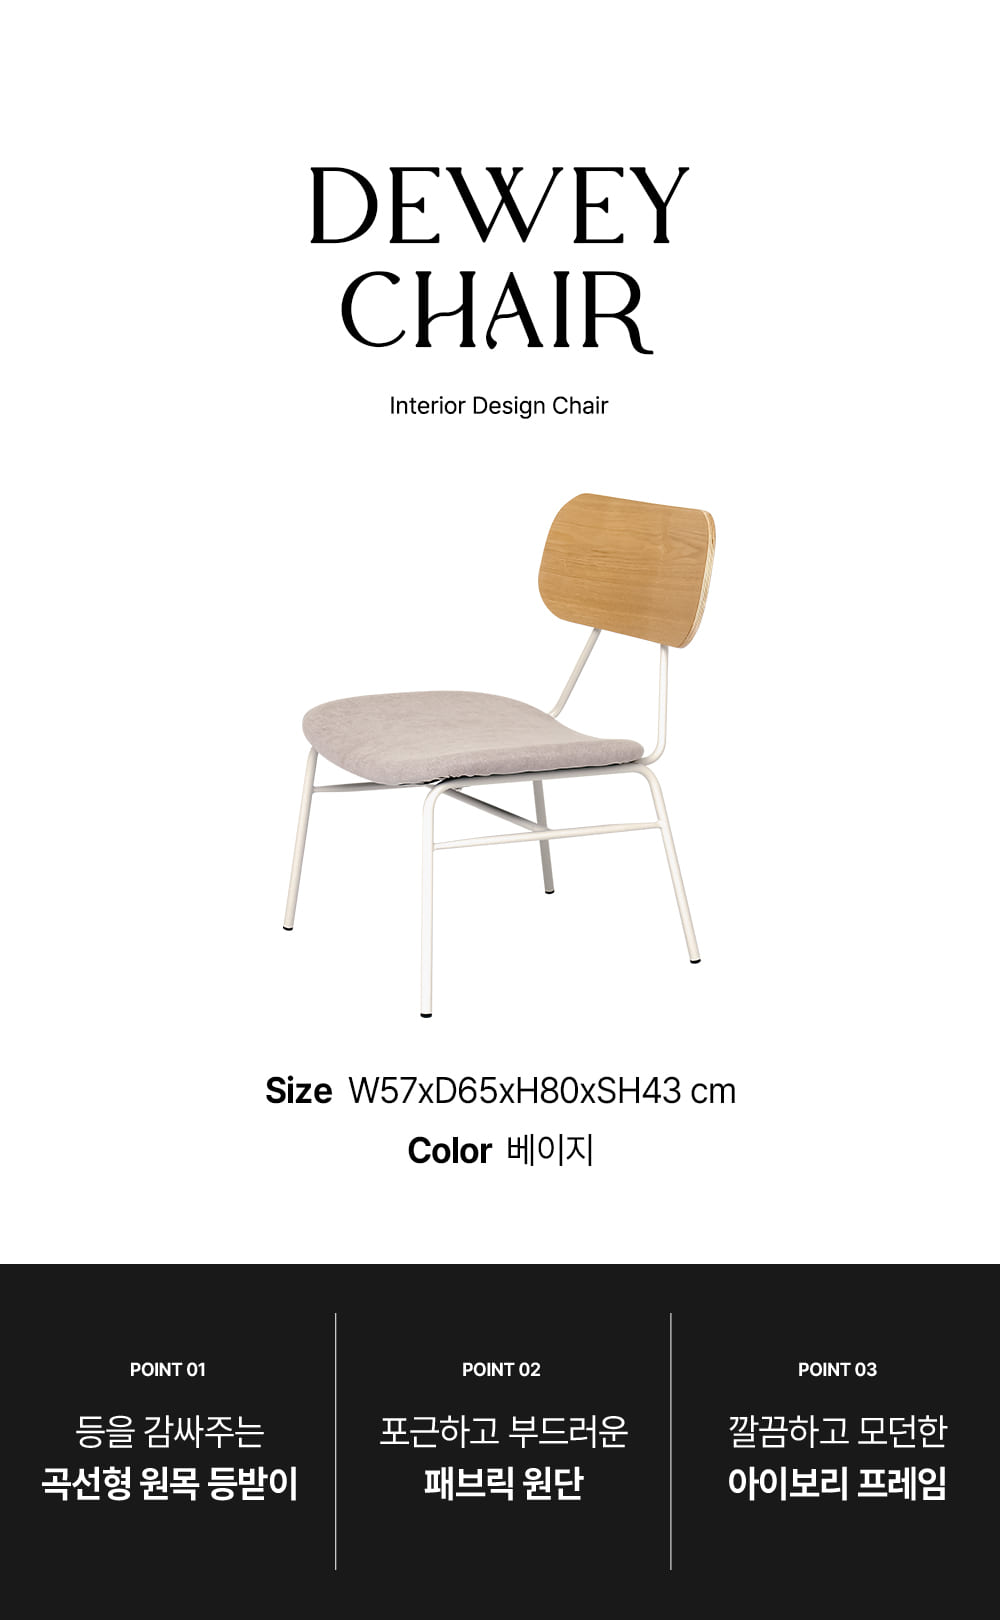 피카소가구 듀이체어 아트웨이 / 키워드 : 디자인의자, 인테리어의자, 철재의자, 디자인의자, 카페의자, 미드센추리모던, 실버프레임, 카페의자, 디자인의자